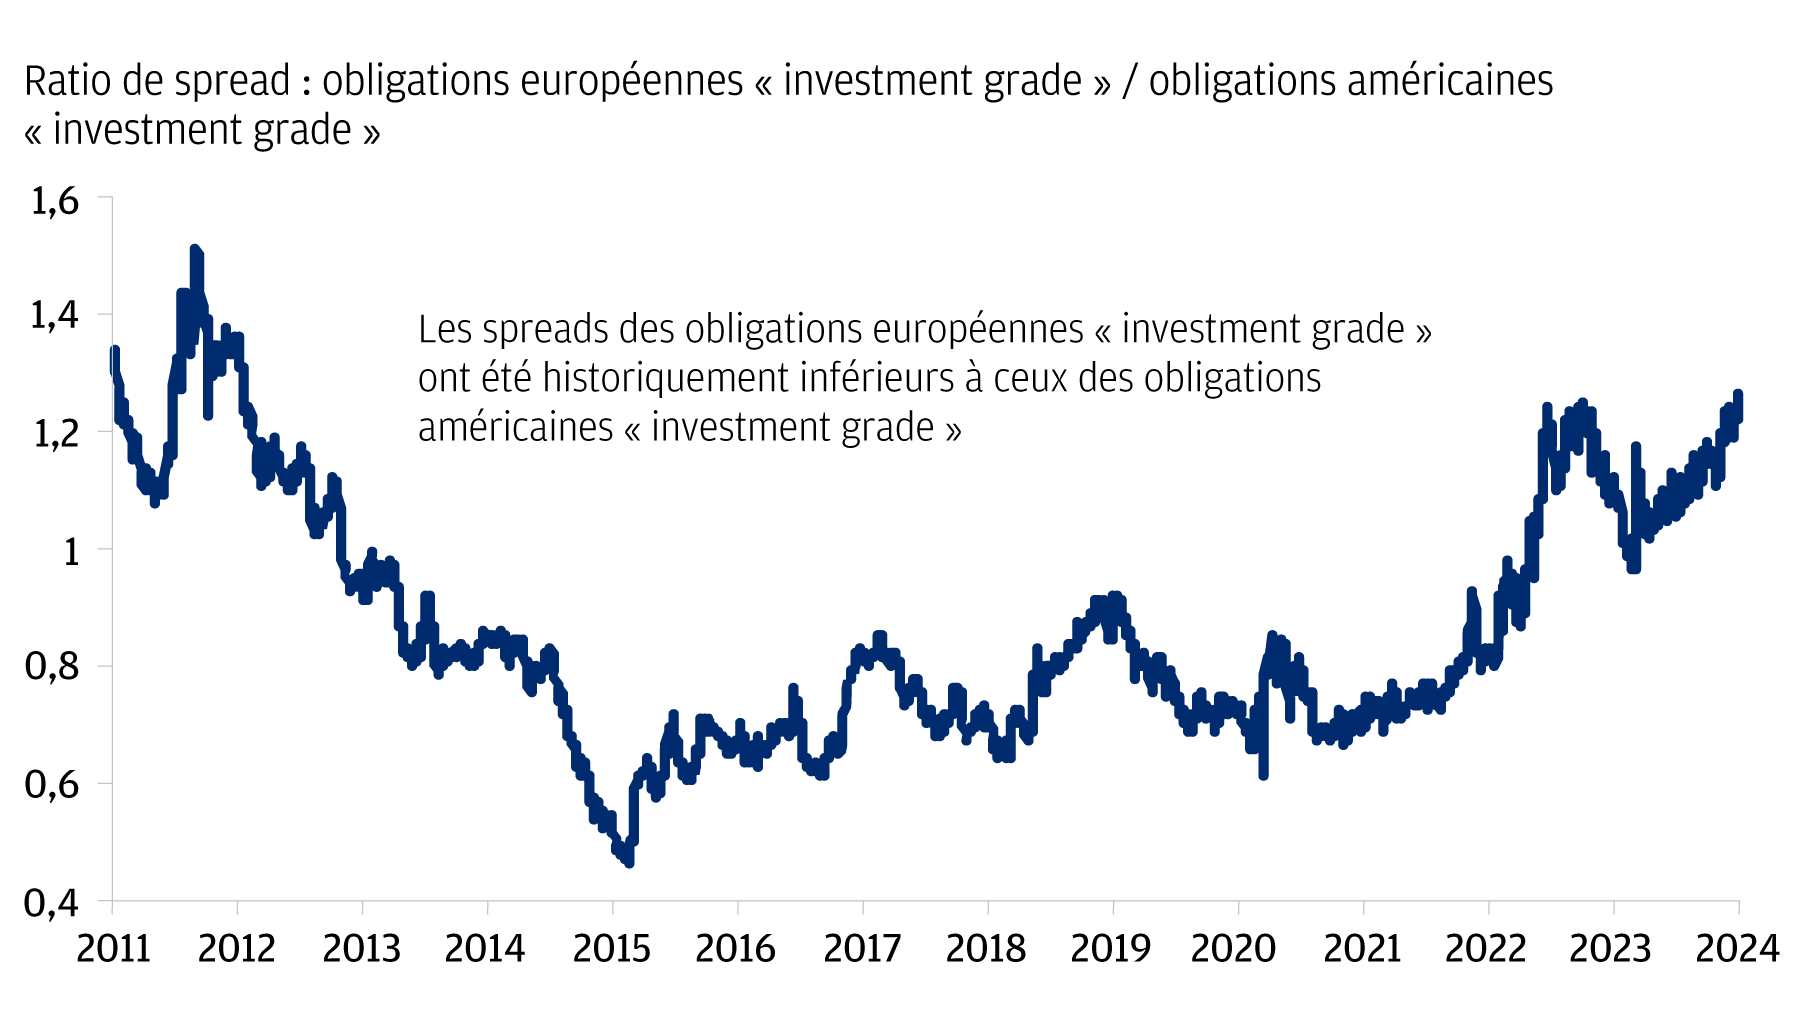 Ce graphique linéaire montre le ratio de spread entre les obligations européennes « investment grade » et les obligations américaines « investment grade » de 2011 à aujourd'hui. Il comporte également une zone ombrée inférieure à 1,0 qui illustre les moments où les spreads des obligations européennes « investment grade » ont été inférieurs aux spreads des obligations américaines « investment grade ».